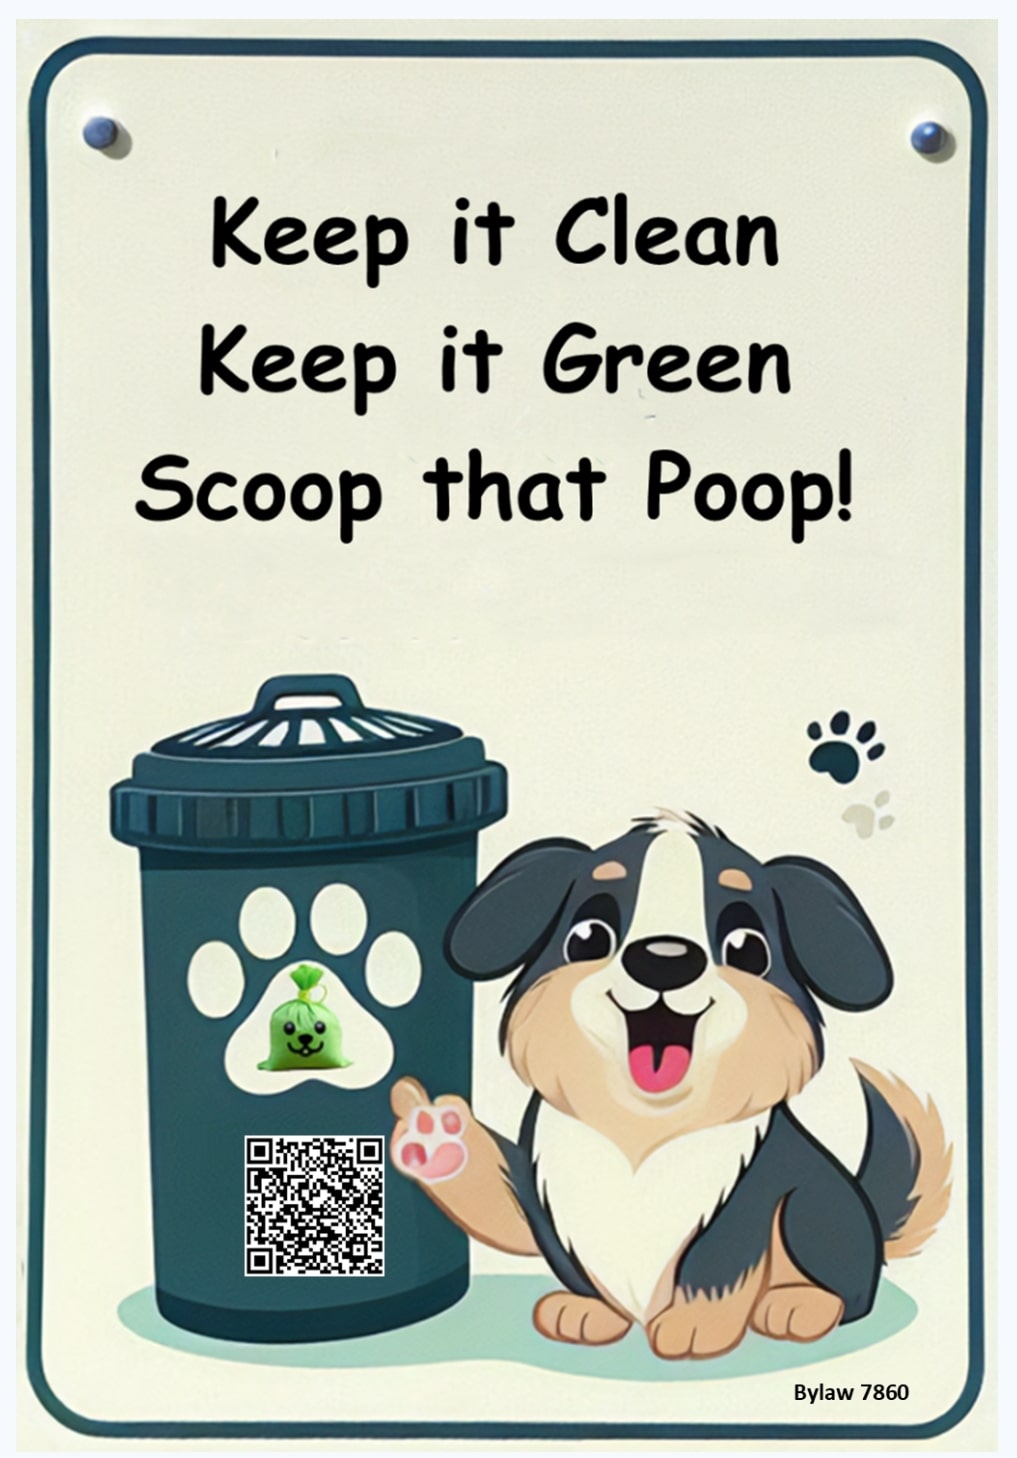 Keep it Clean Keep it Green Scoop that Poop